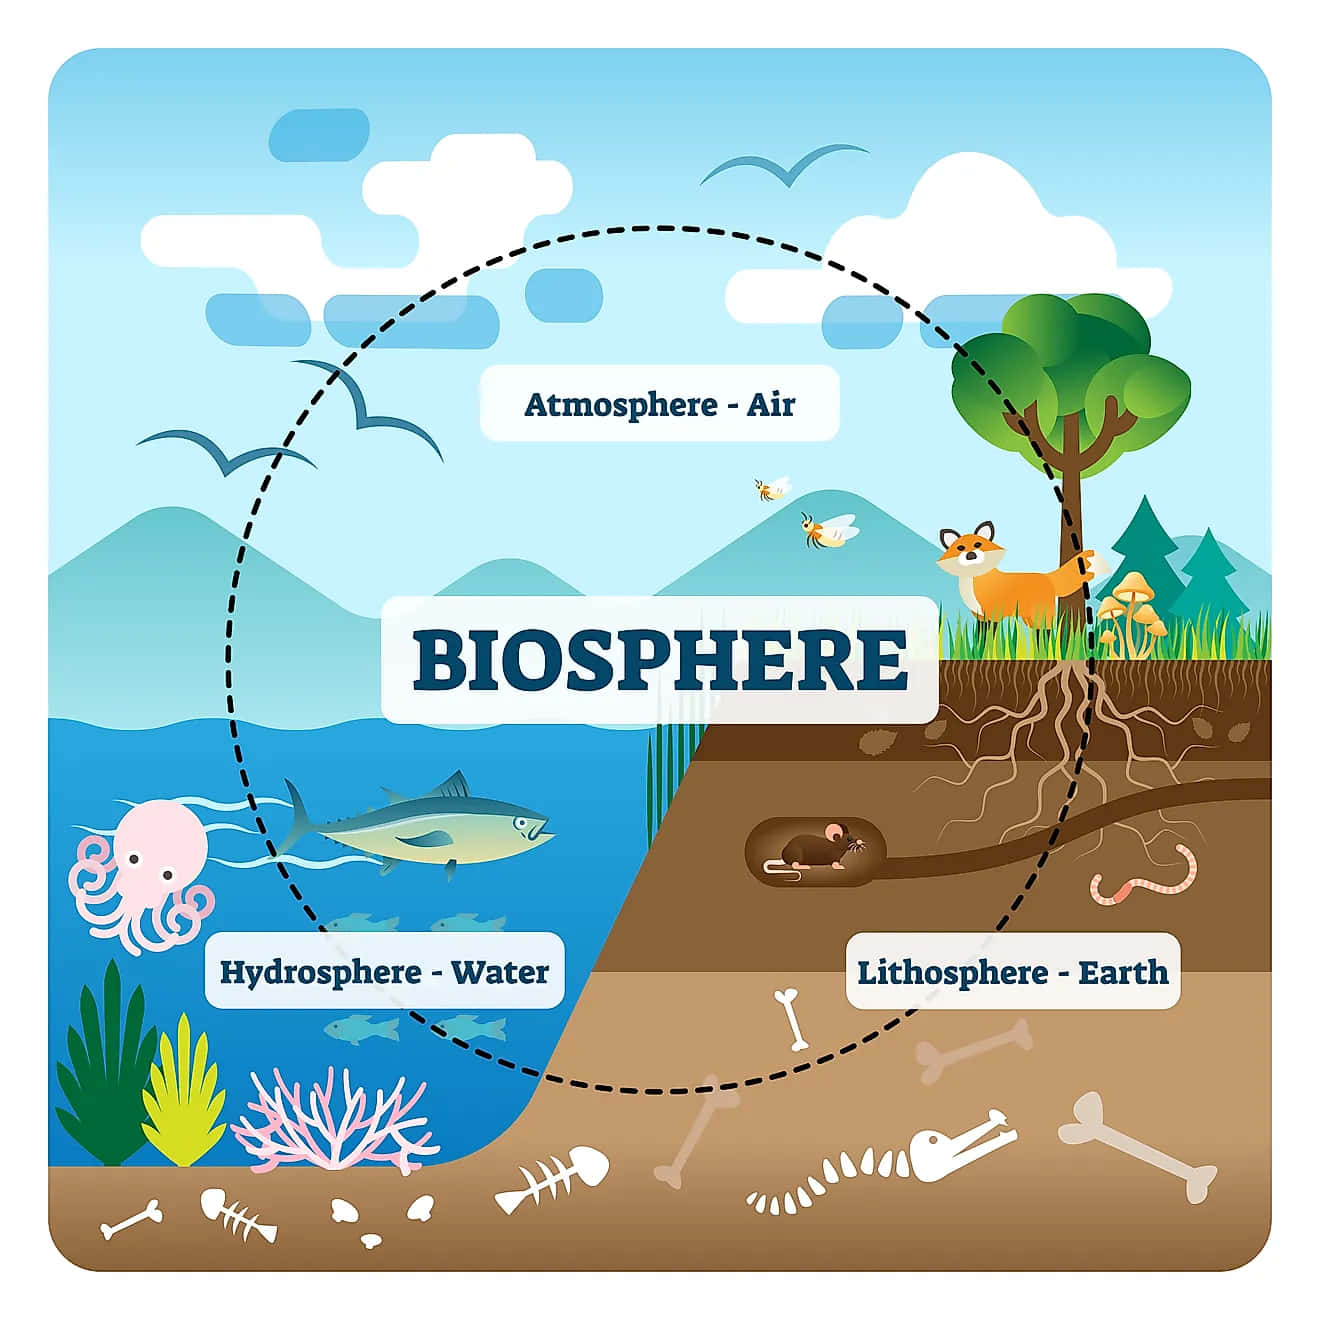 Alluring Outlook of Biosphere